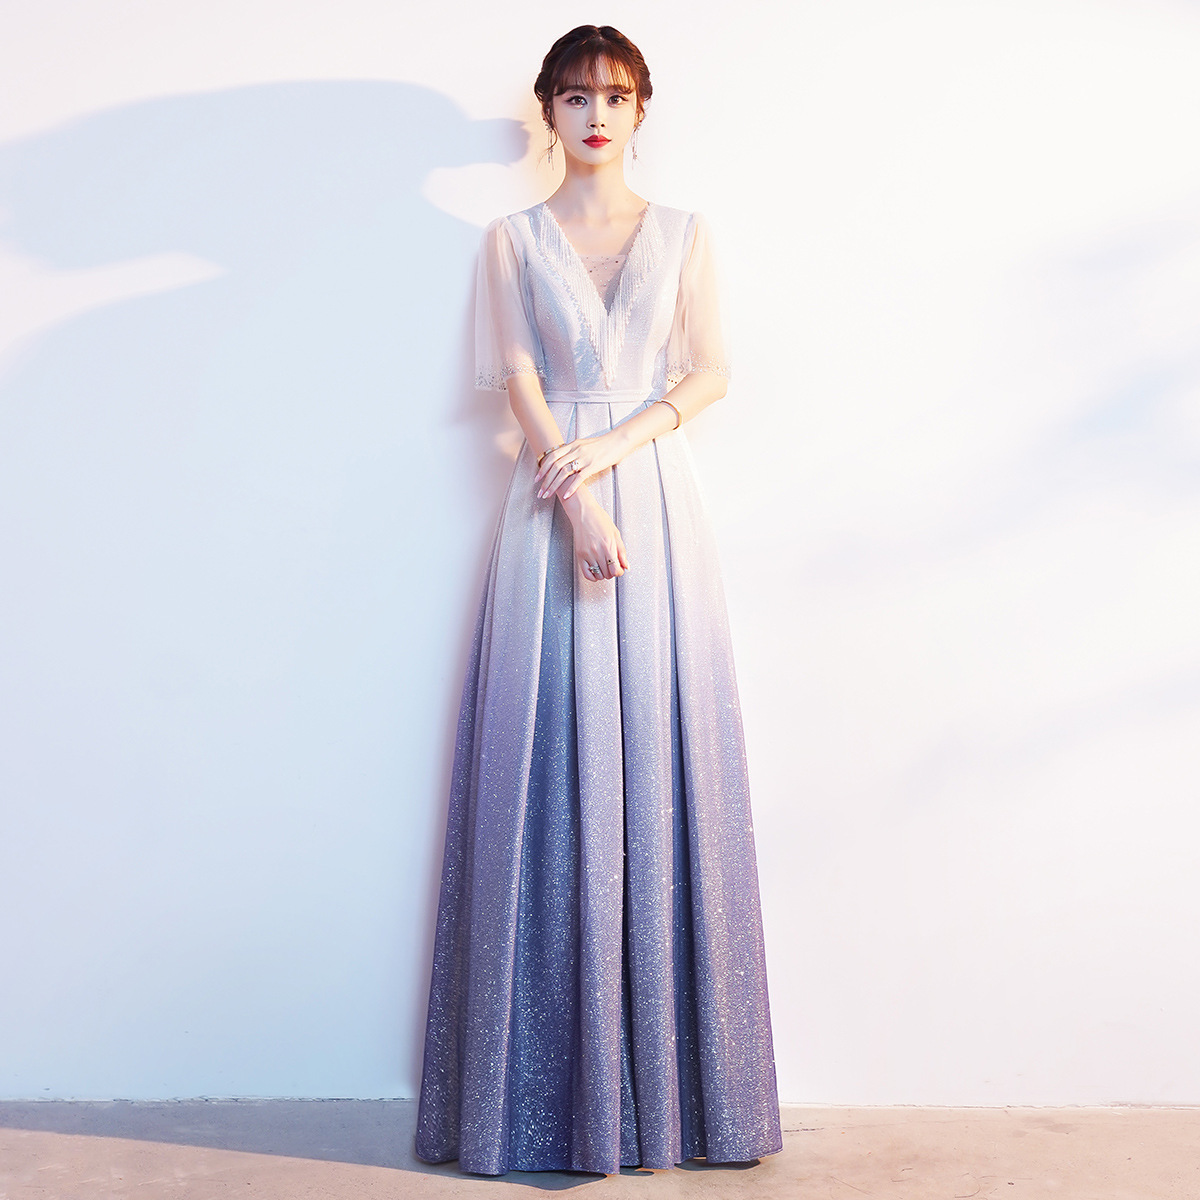 (Mới) Mã B4350 Giá 1640K: Váy Đầm Liền Thân Dáng Dài Nữ Metyry Thời Trang Nữ Chất Liệu G05 Sản Phẩm Mới, (Miễn Phí Vận Chuyển Toàn Quốc).